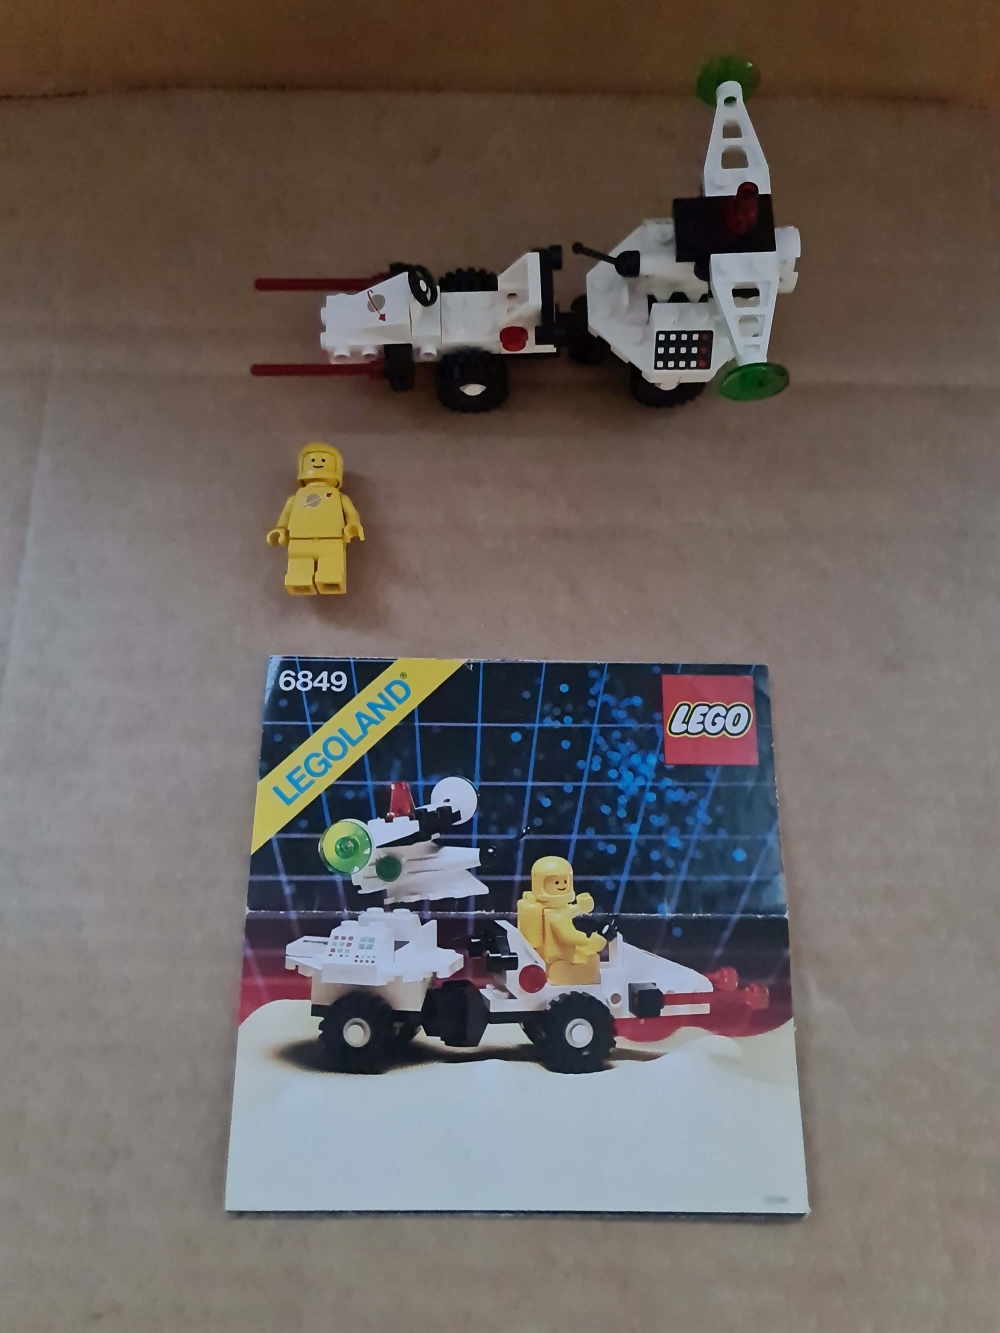 Sett 6849 fra Lego Classic Space serien.
Meget pent. Komplett med manual